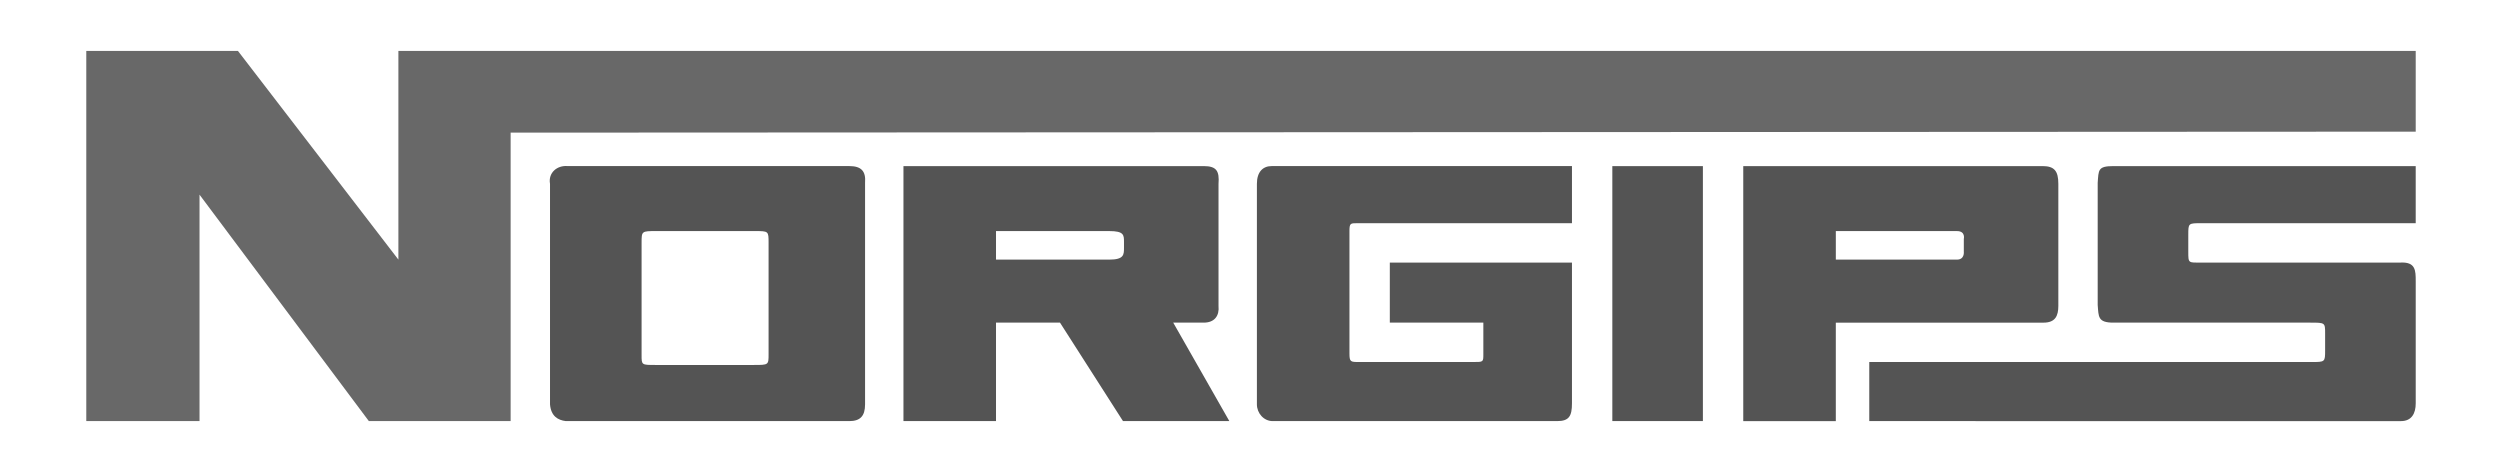 logo_company_13